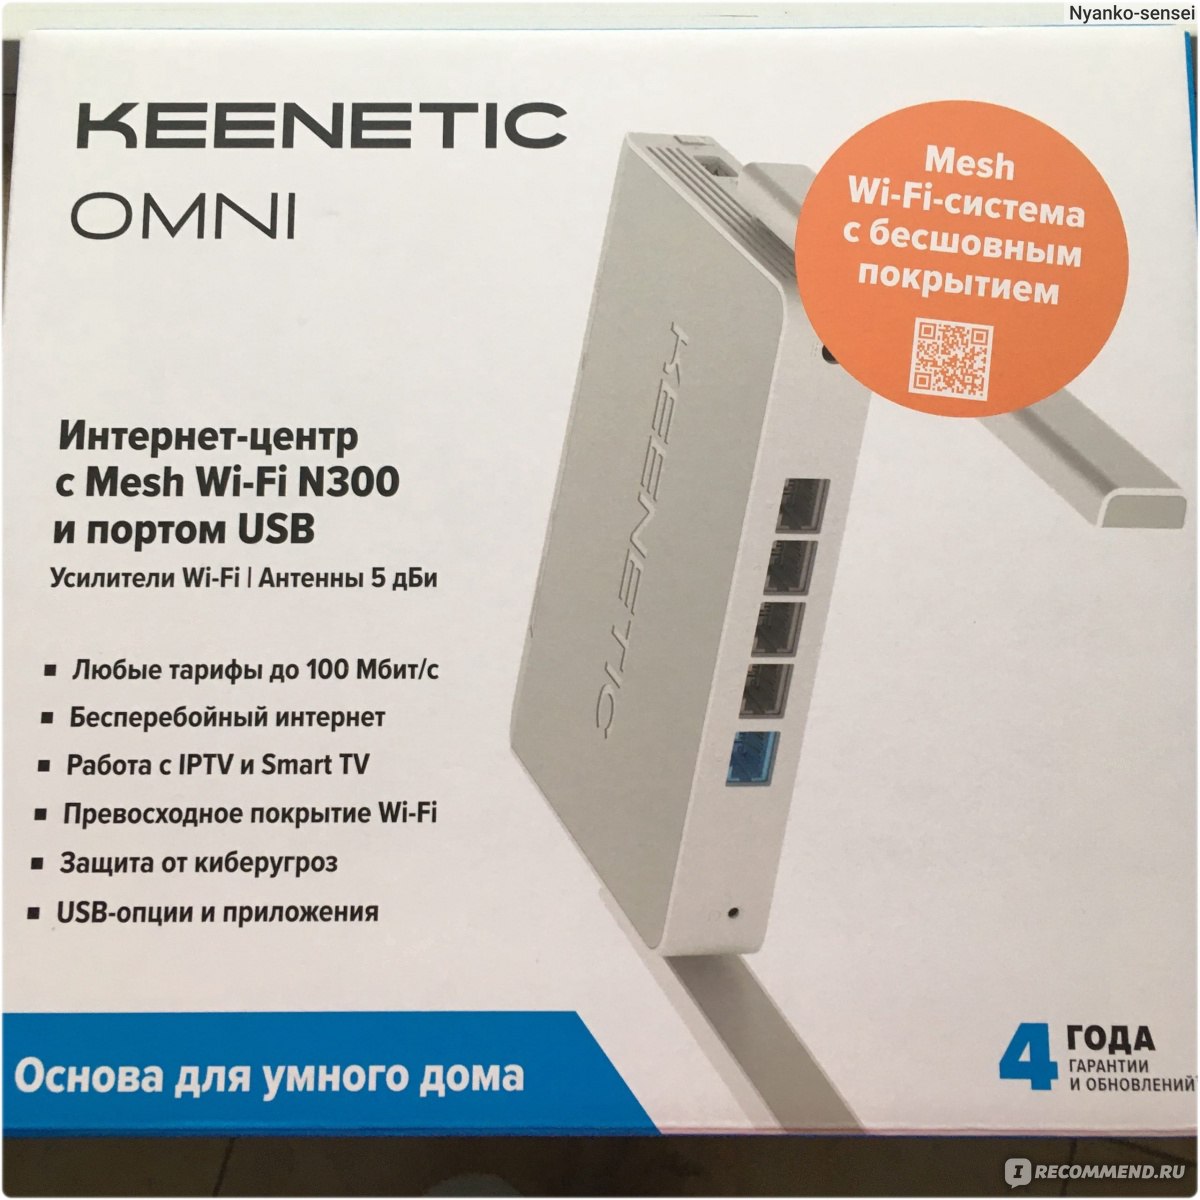 Omni kn 1410. Keenetic Omni (KN-1410). Keenetic KN-1410. Keenetic Omni KN-1410 блок питания.